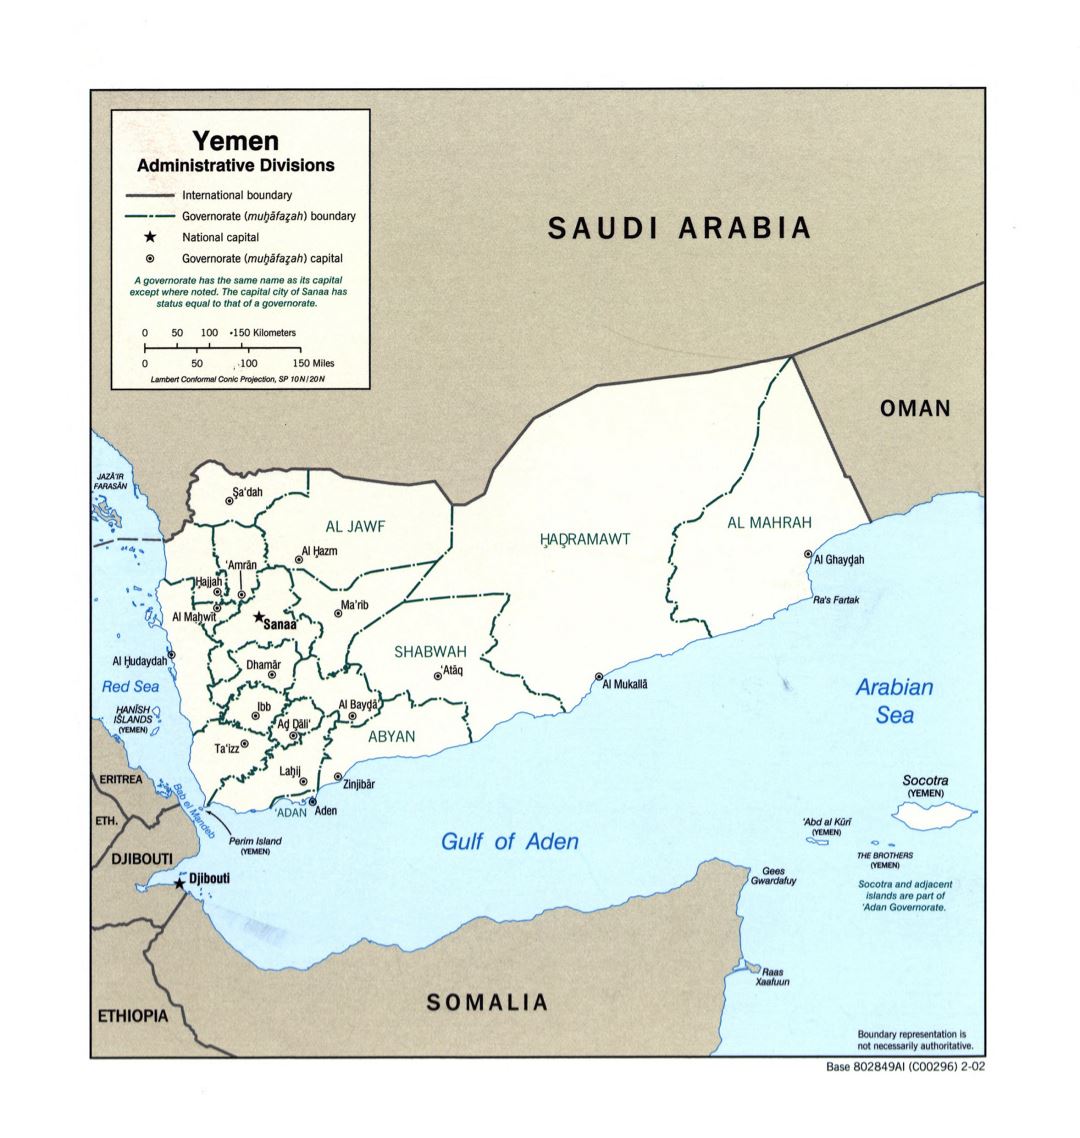 Grande detallado mapa de administrativas divisiones de Yemen - 2002